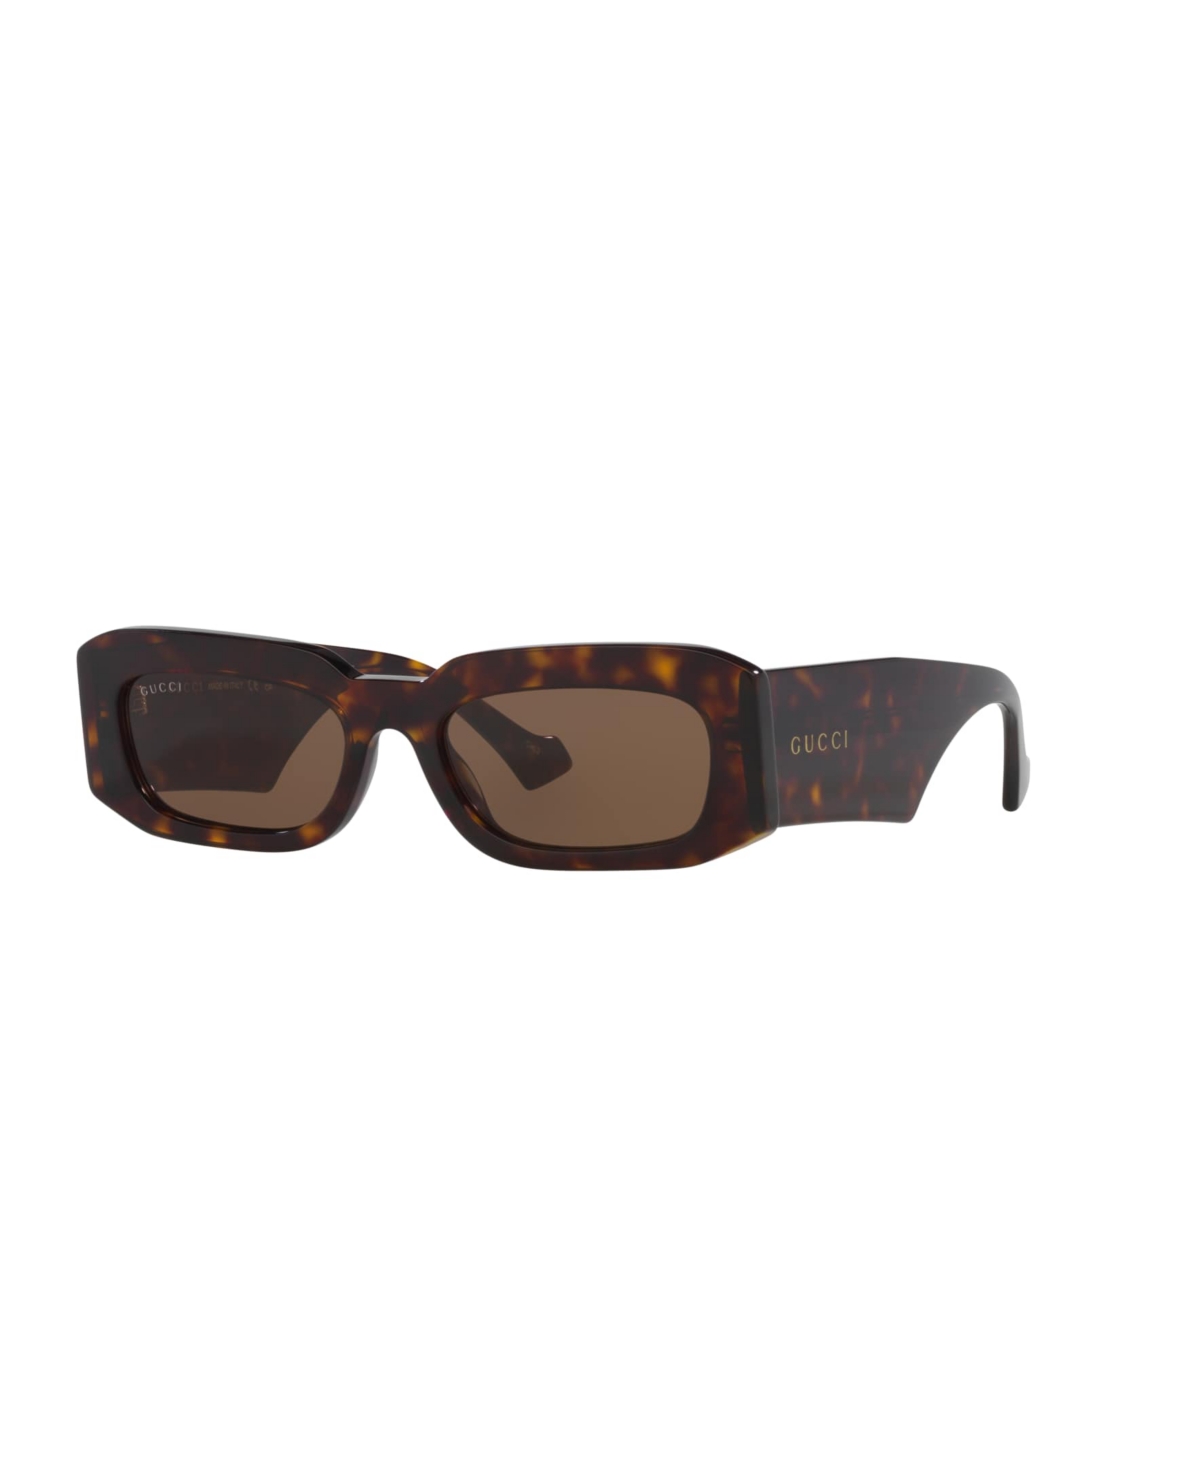 Gucci Men's Sunglasses, Gg1426s In Tortoise